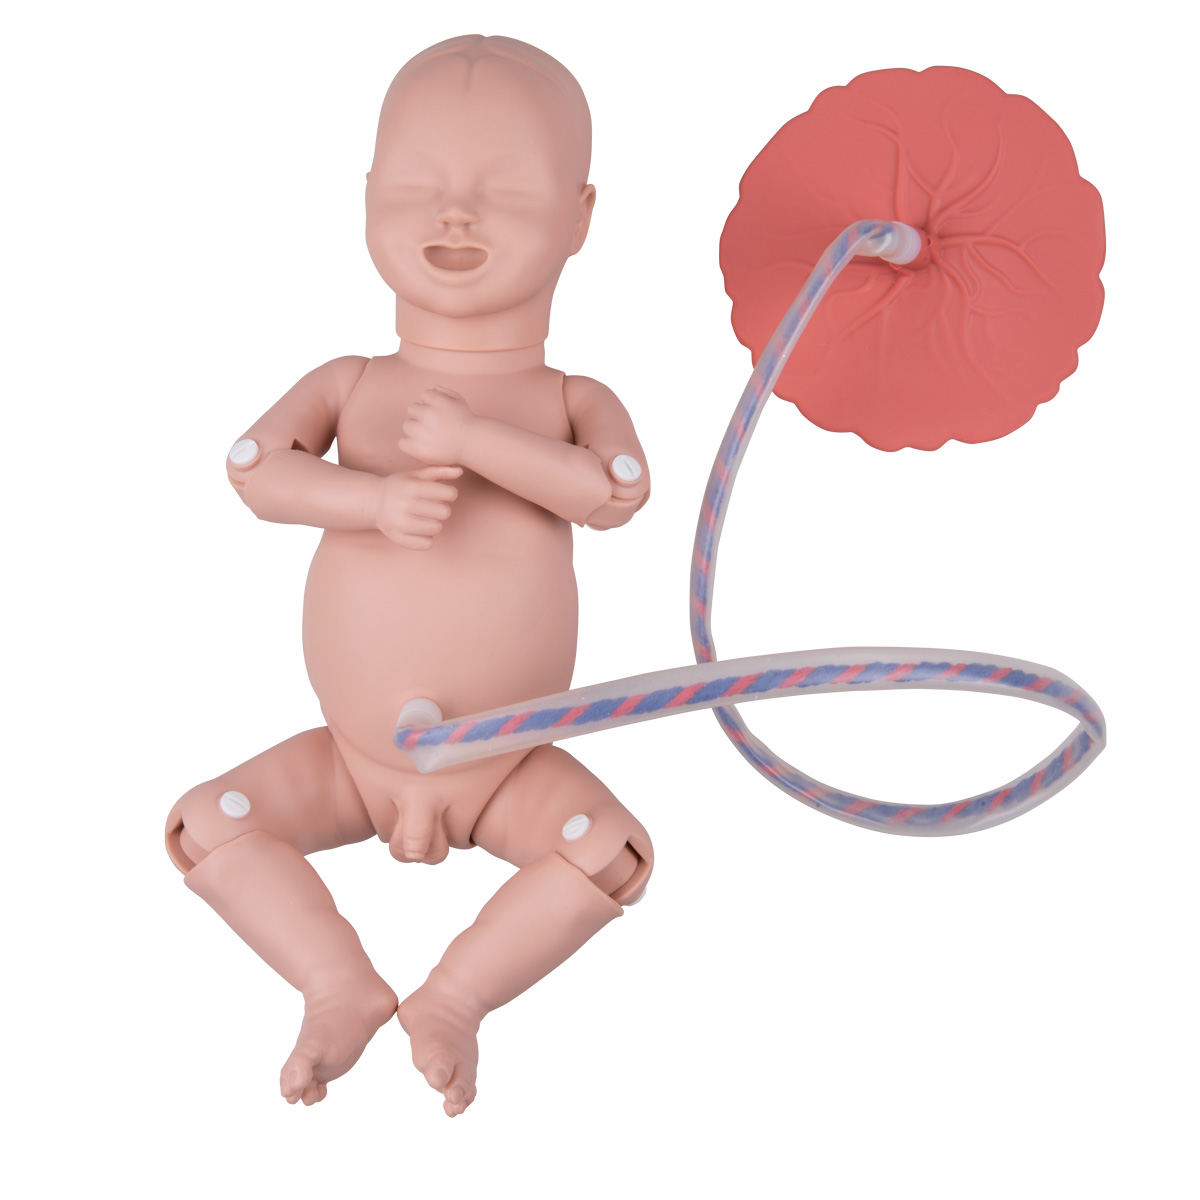 Lactancia materna - 1001907 - VR3557L - Pregnancy and Childbirth - 3B  Scientific